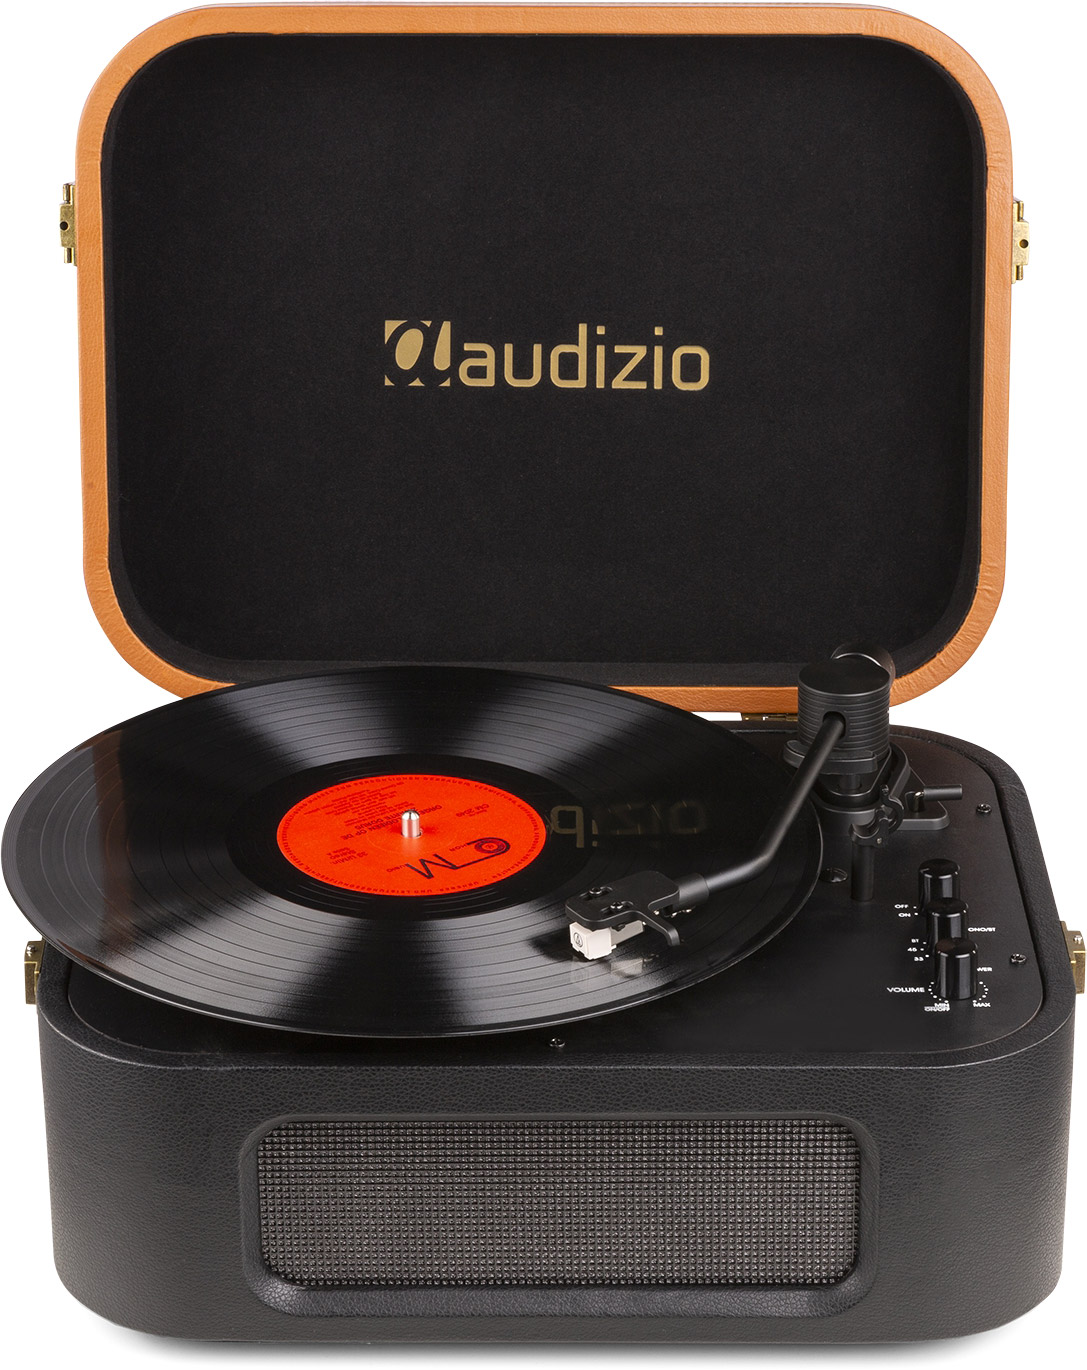 Audizio RP315 Tourne-disque HQ Noir - à prix avantageux chez LTT